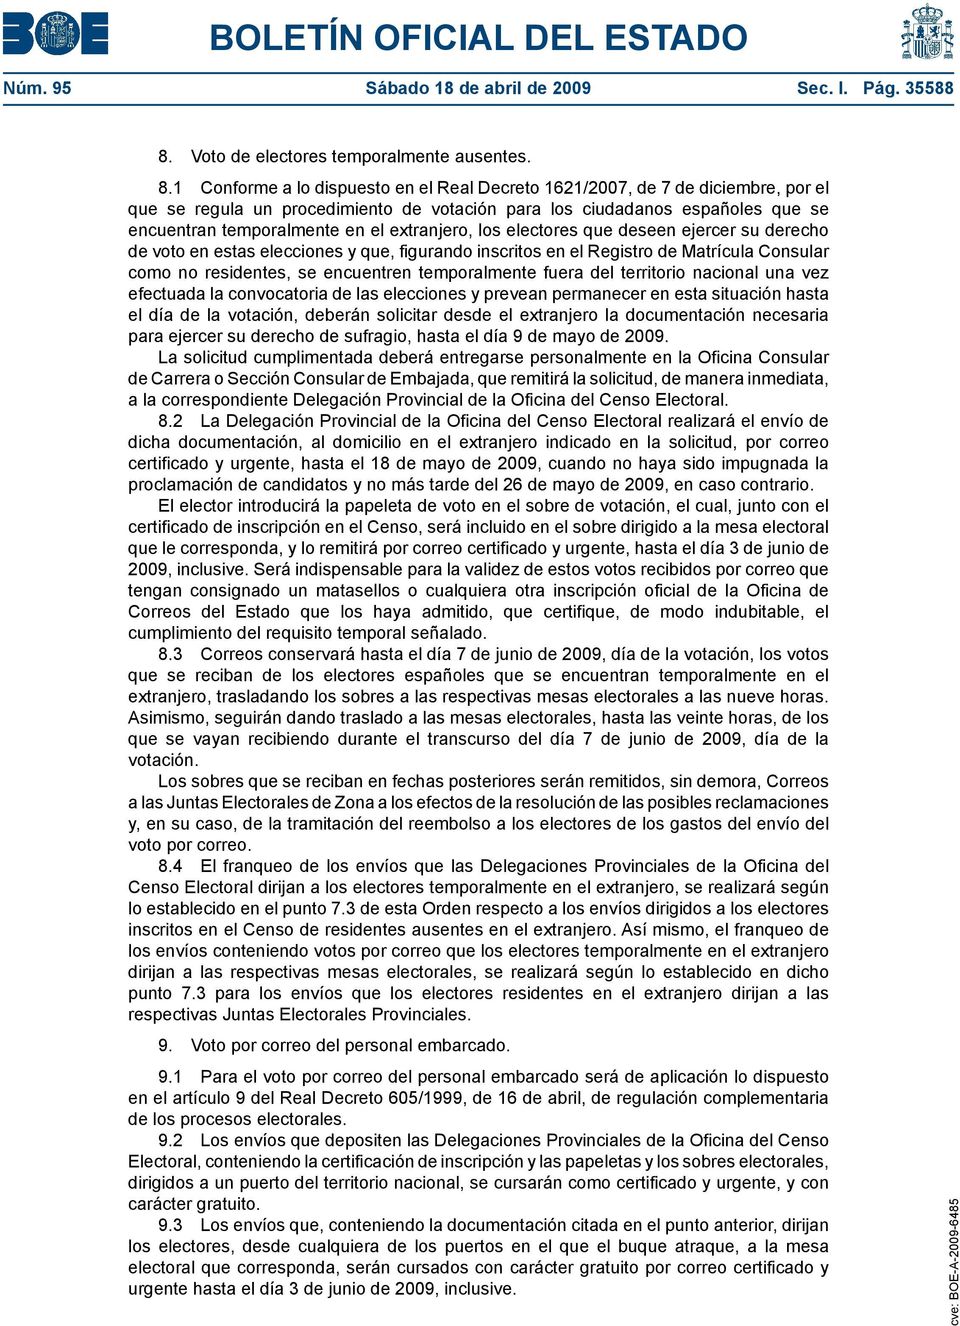 1 Conforme a lo dispuesto en el Real Decreto 1621/2007, de 7 de diciembre, por el que se regula un procedimiento de votación para los ciudadanos españoles que se encuentran temporalmente en el